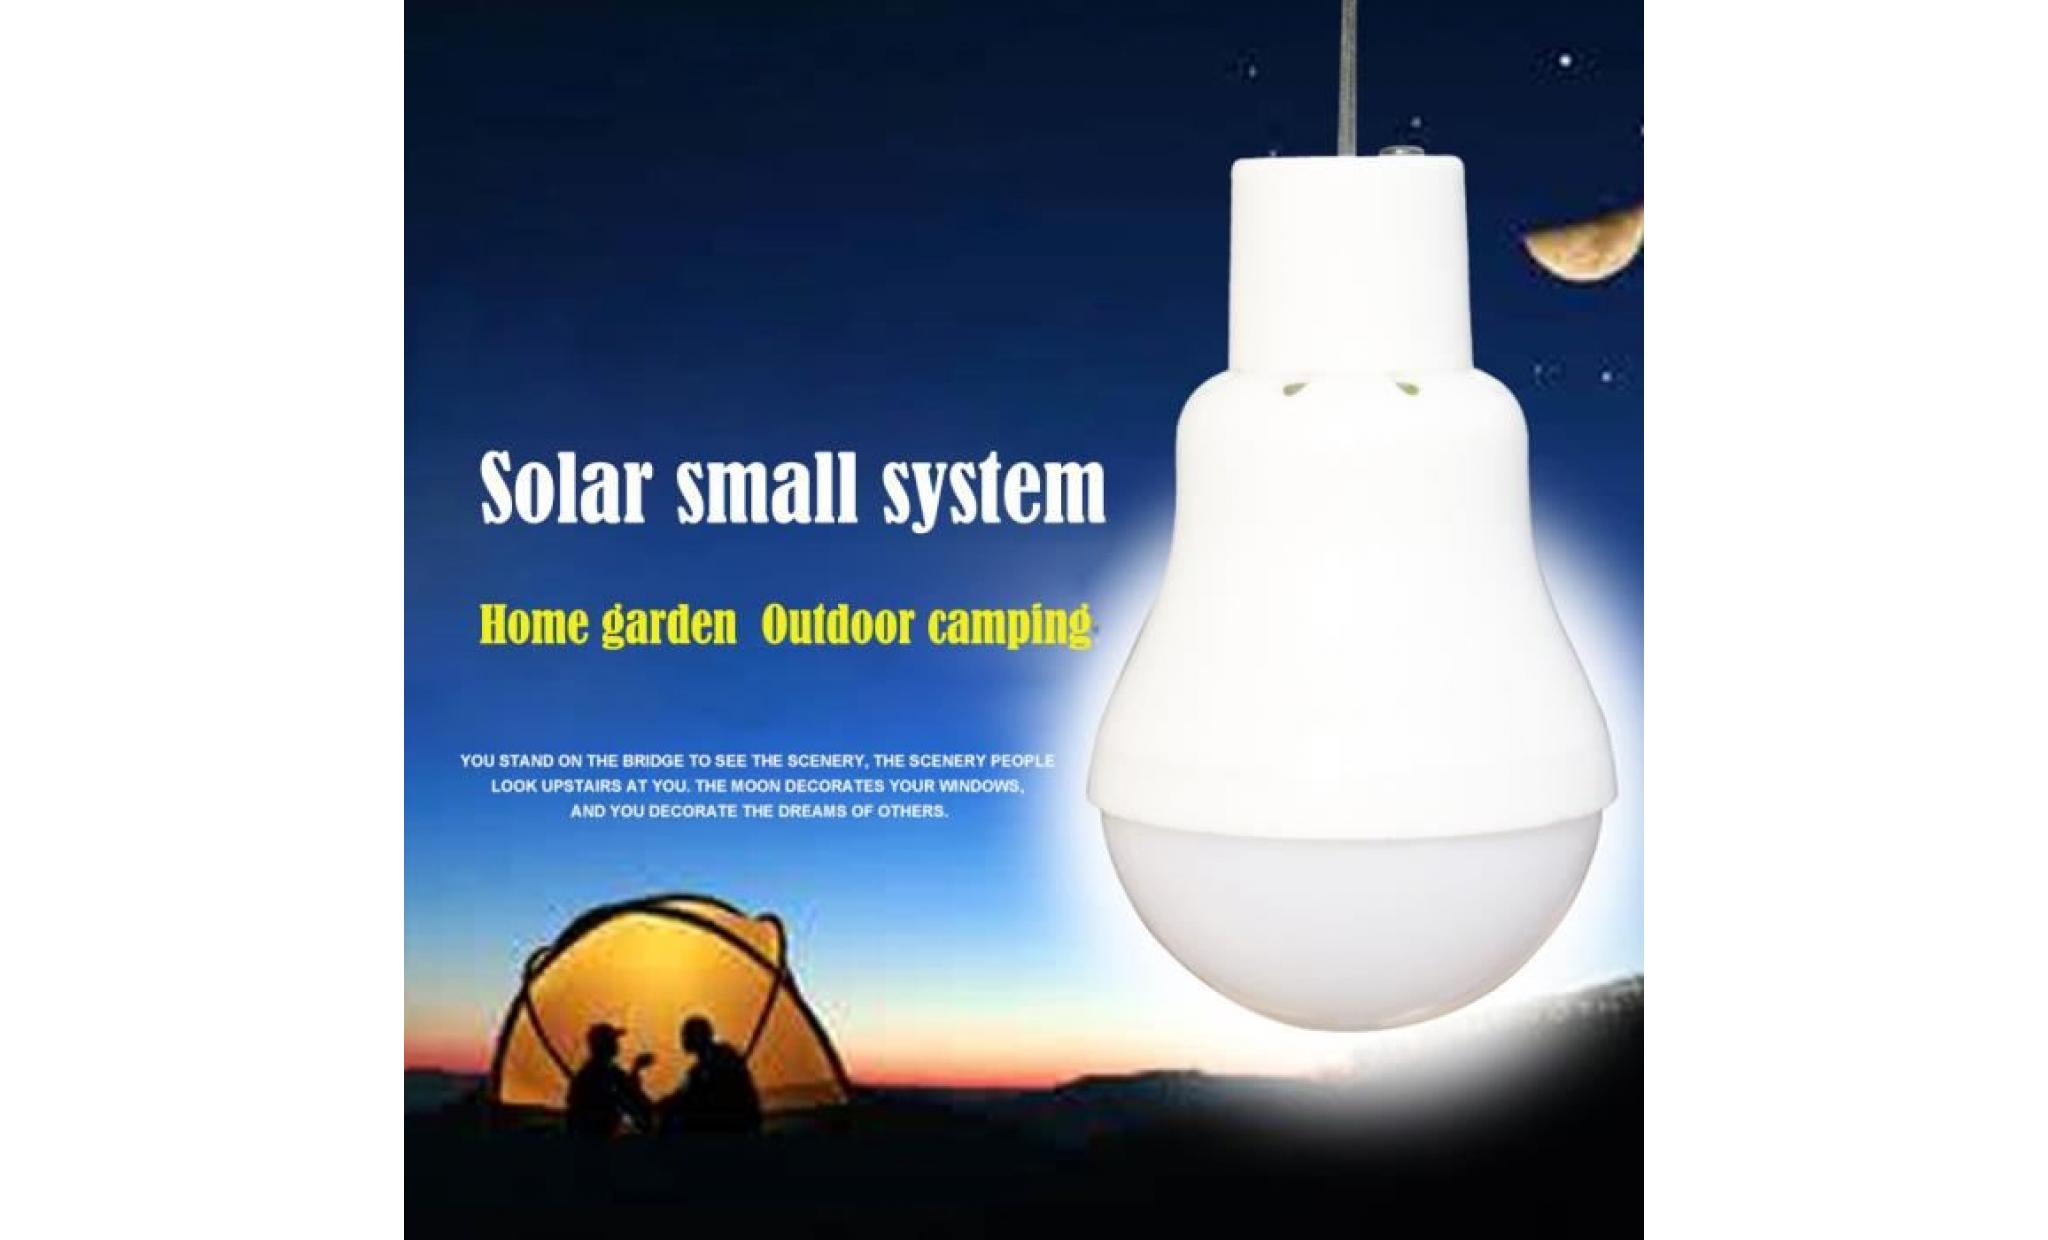 ampoule solaire extérieure powered rechargeable led portable lumière camping lampe de jardin   lpp80528941 pas cher